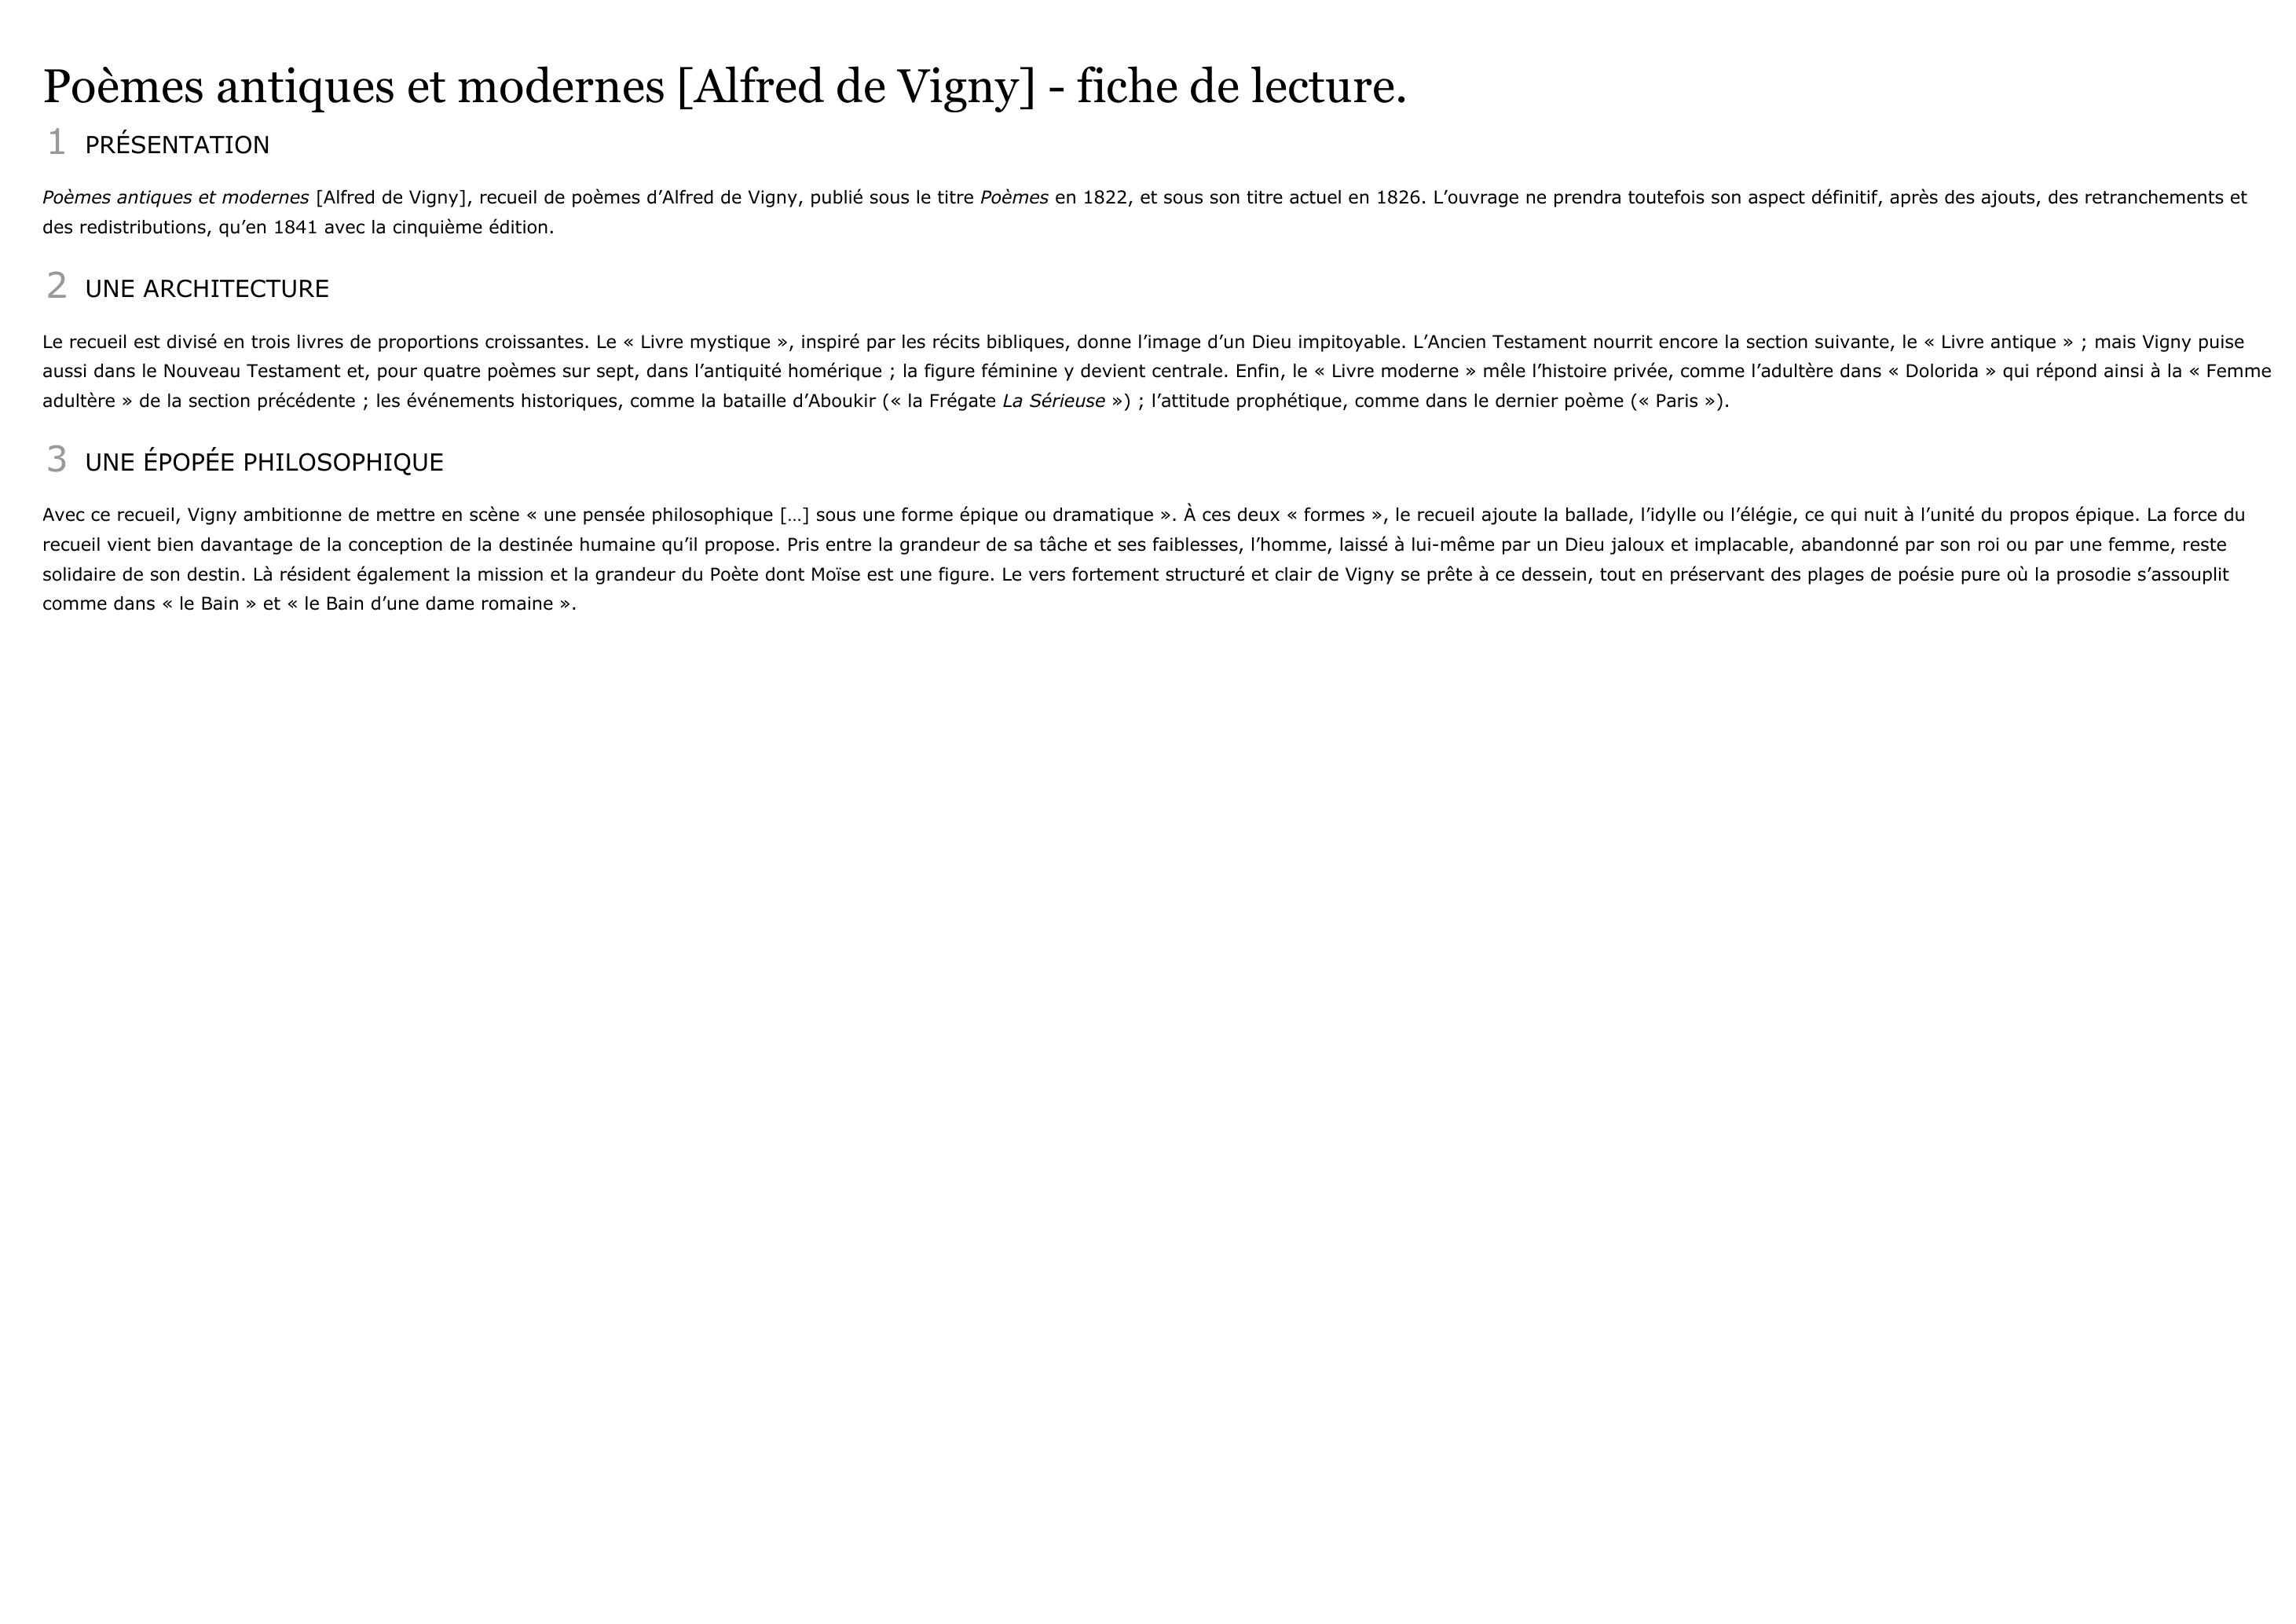 Prévisualisation du document Poèmes antiques et modernes, recueil d'Alfred de Vigny